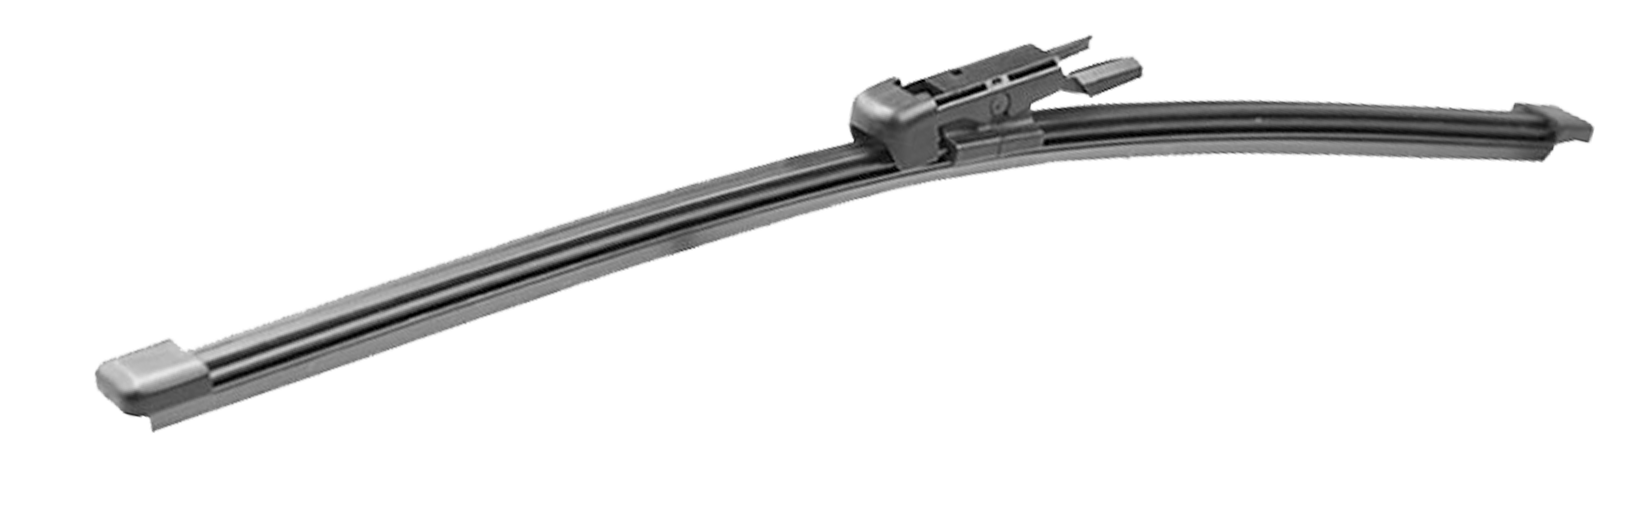 Rear Wiper Blade for Mercedes-AMG A45 2013-2015 (W176) 